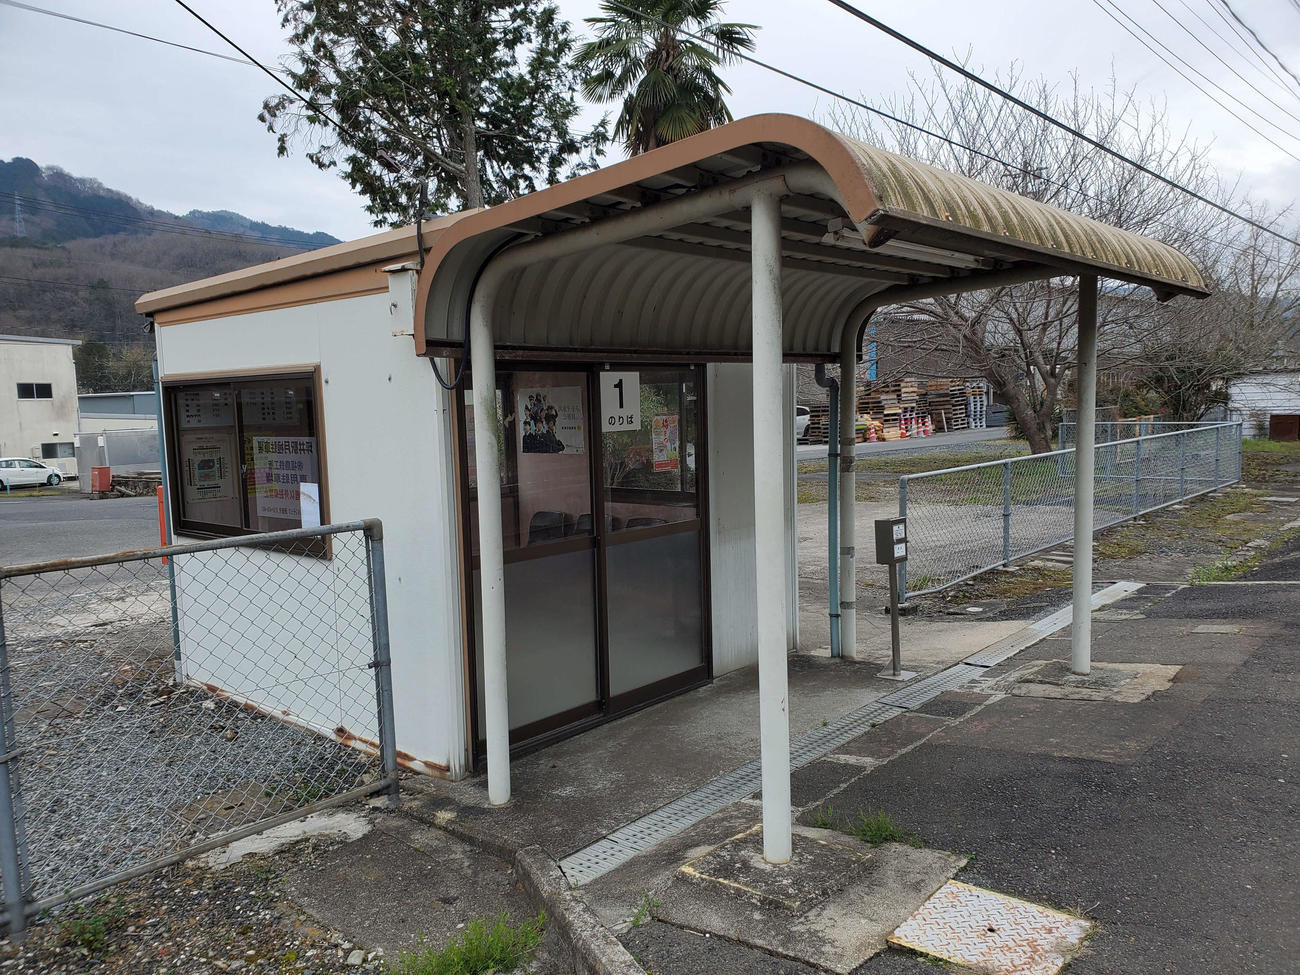 〈7〉バス停のような坪井駅の待合所